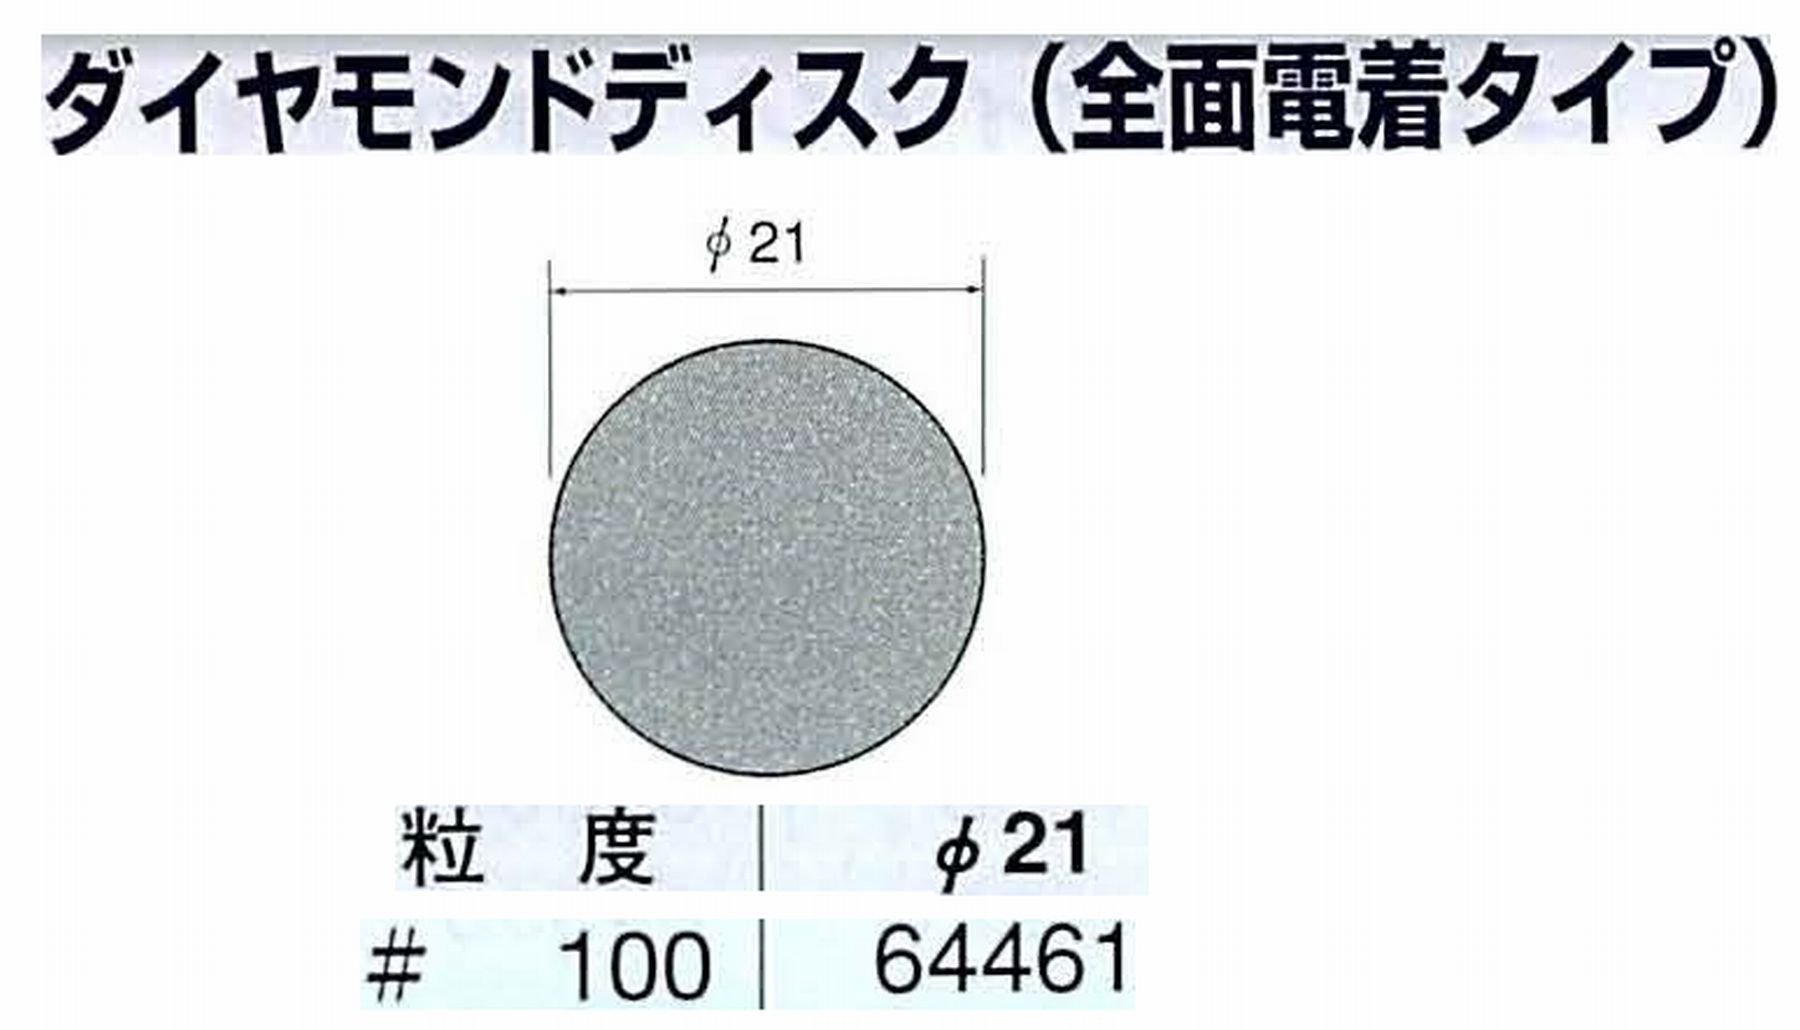 ナカニシ/NAKANISHI アングルグラインダ(電動・エアー) アングルアタッチメント専用工具 ダイヤモンドディスク(全面電着タイプ) 64461